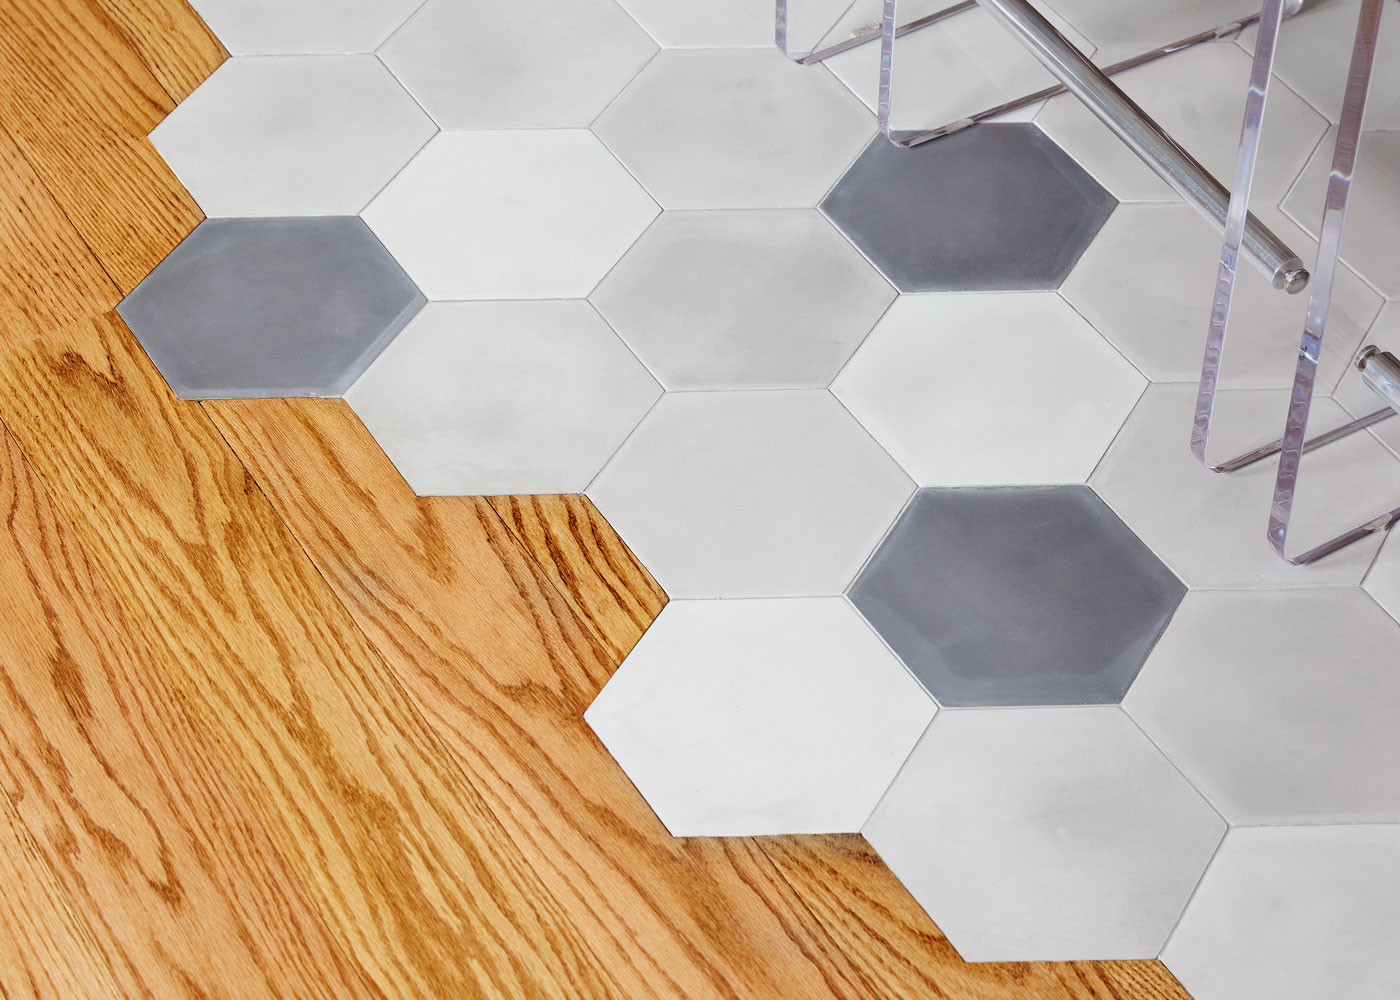 Greenwich Village apartment kitchen floor tiles